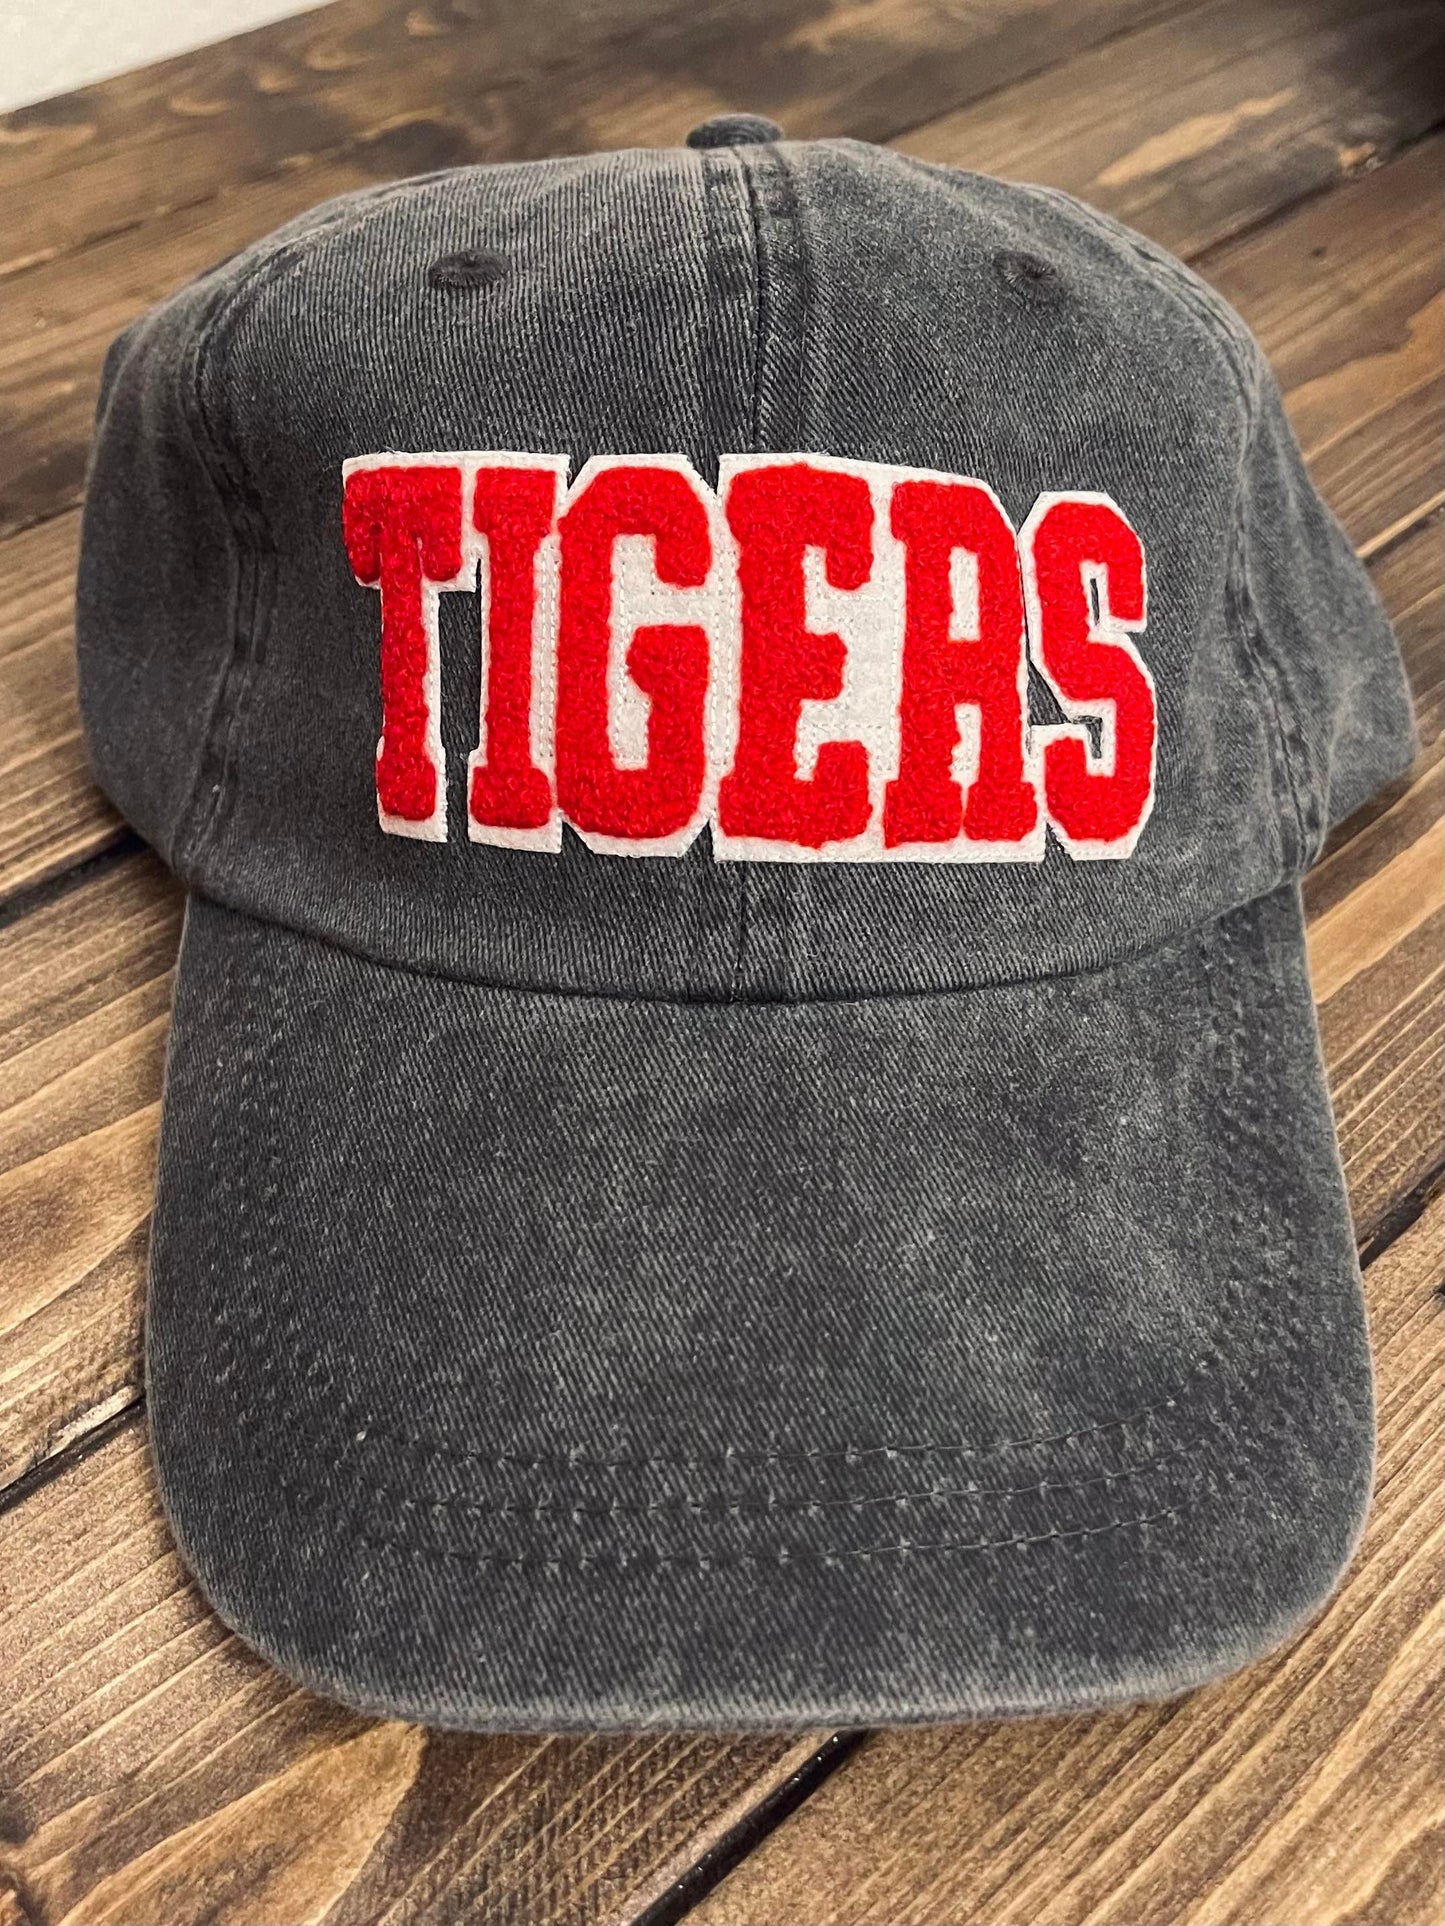 TIGERS - Vintage Chenille Patch Cap